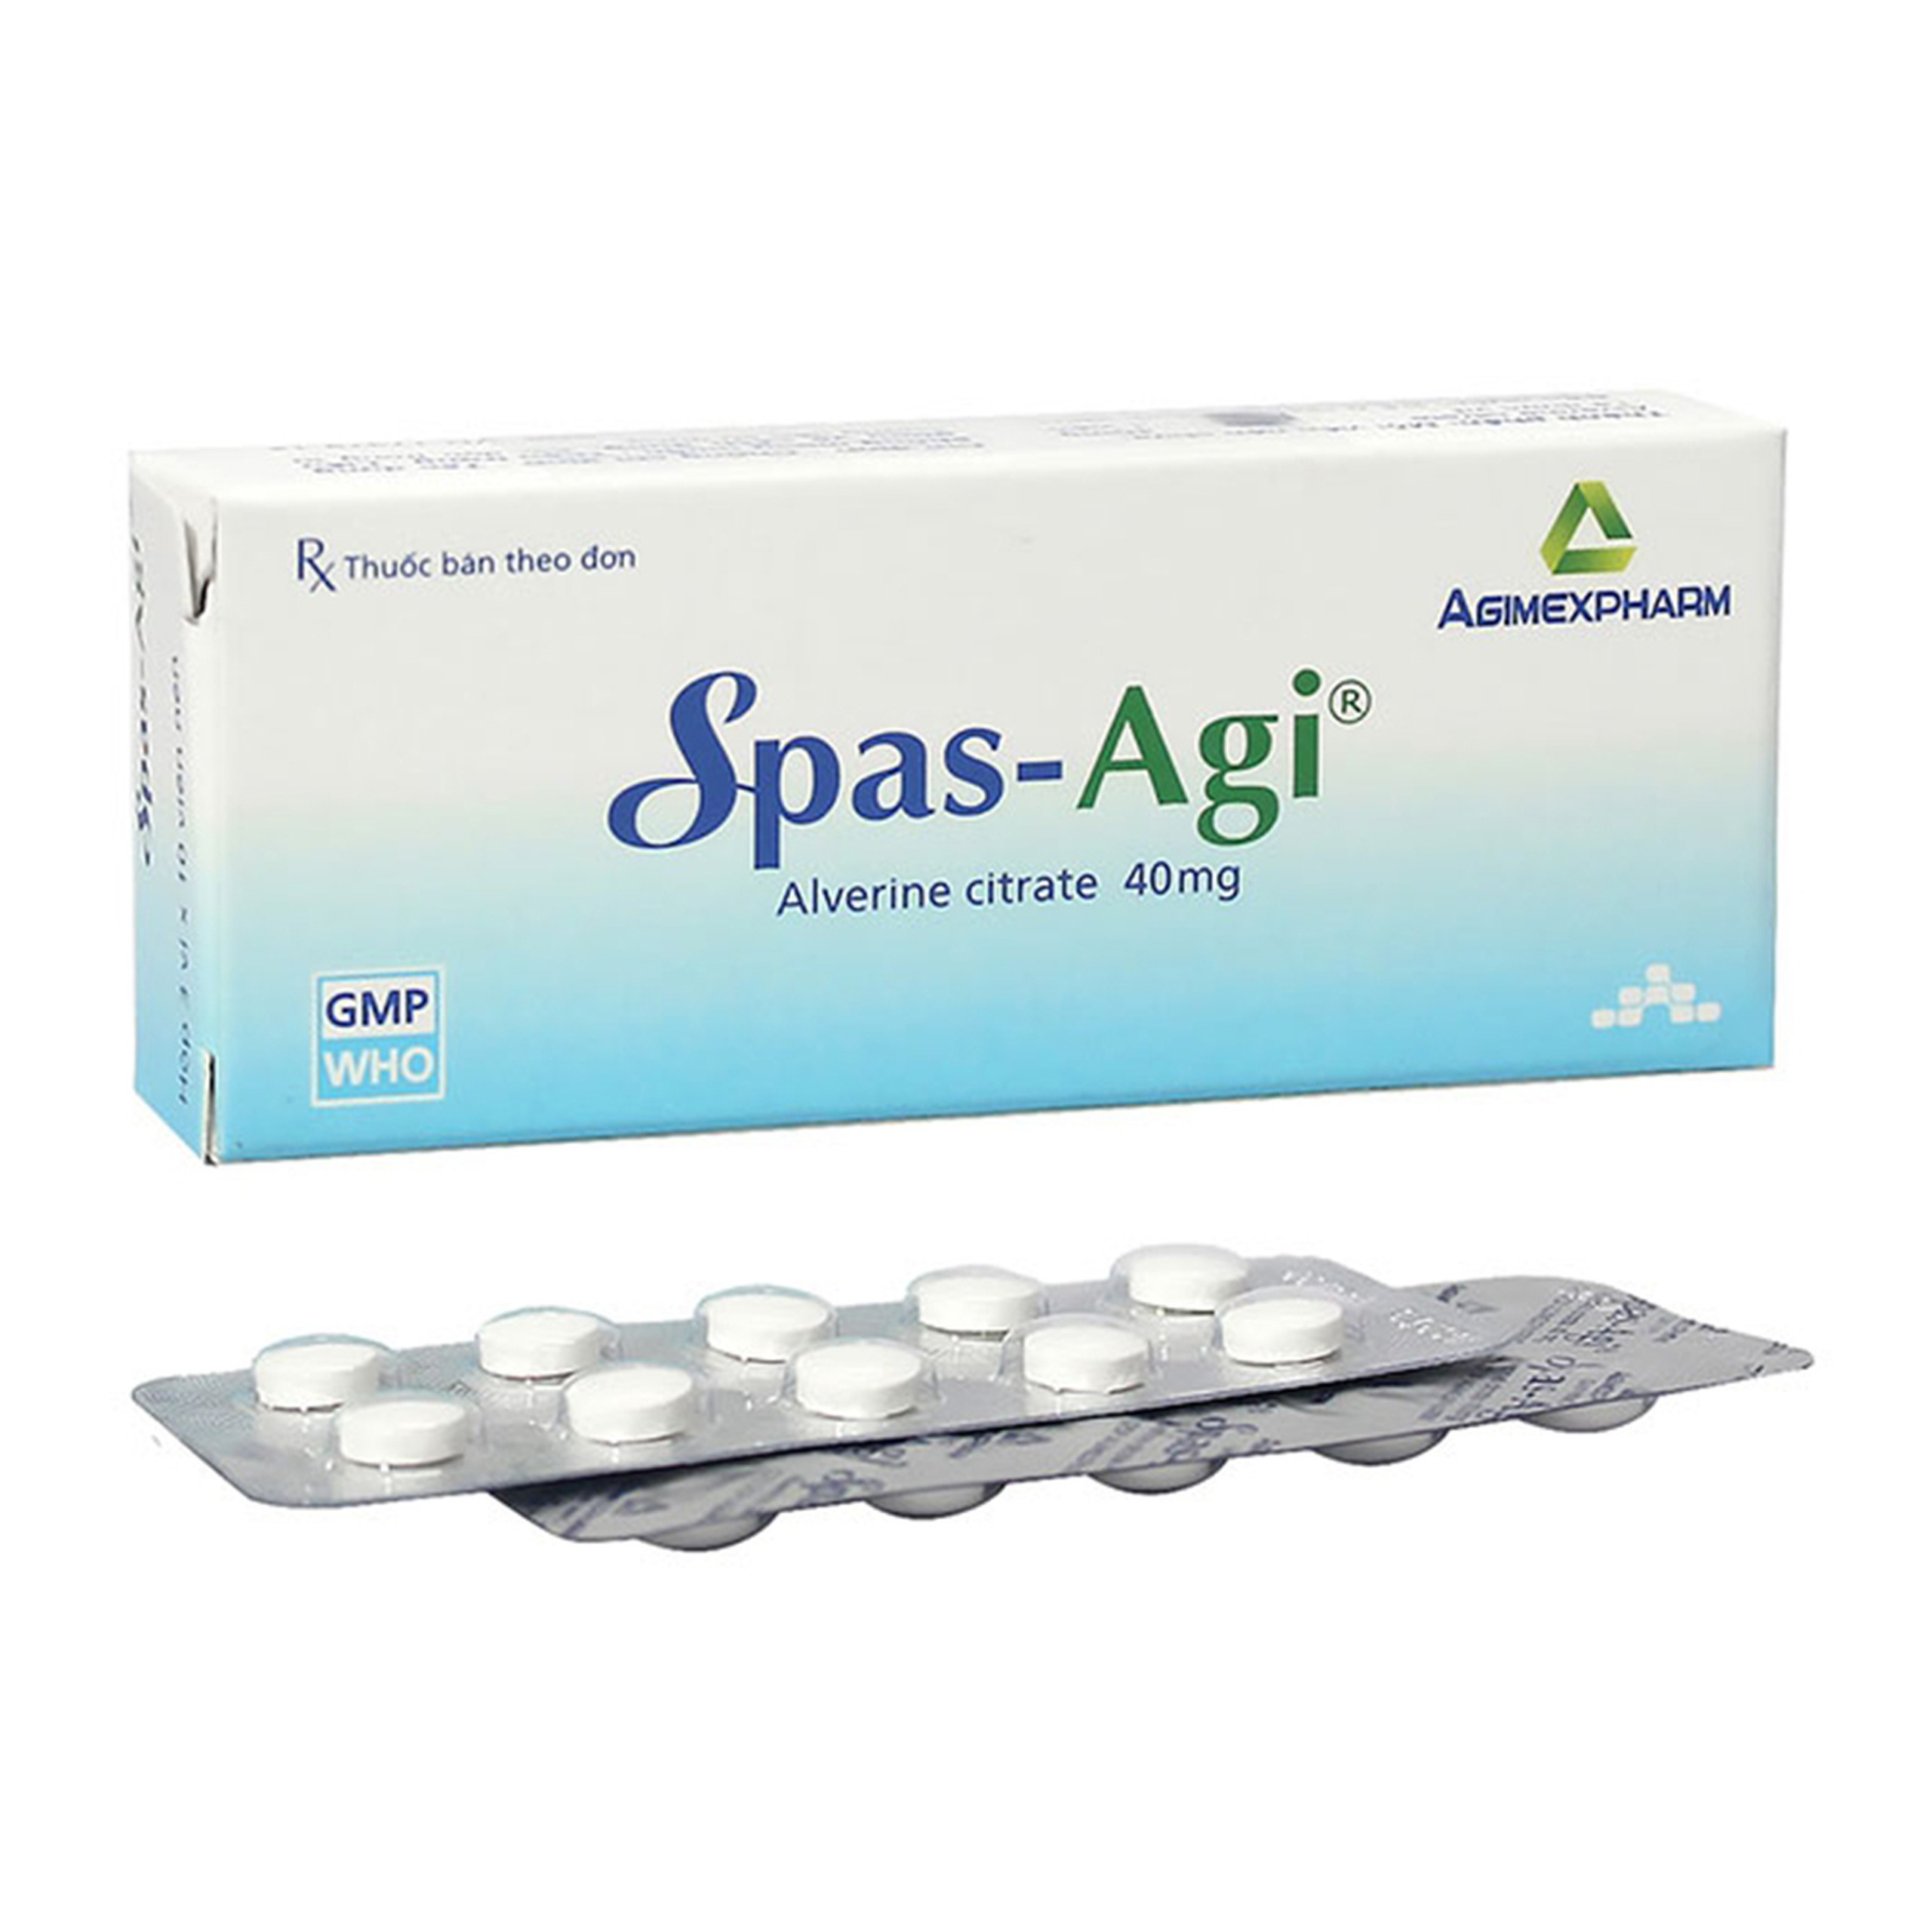 Thuốc Spas-Agi Agimexpharm dùng chống đau do co thắt cơ trơn ở đường tiêu hóa (3 vỉ x 10 viên)